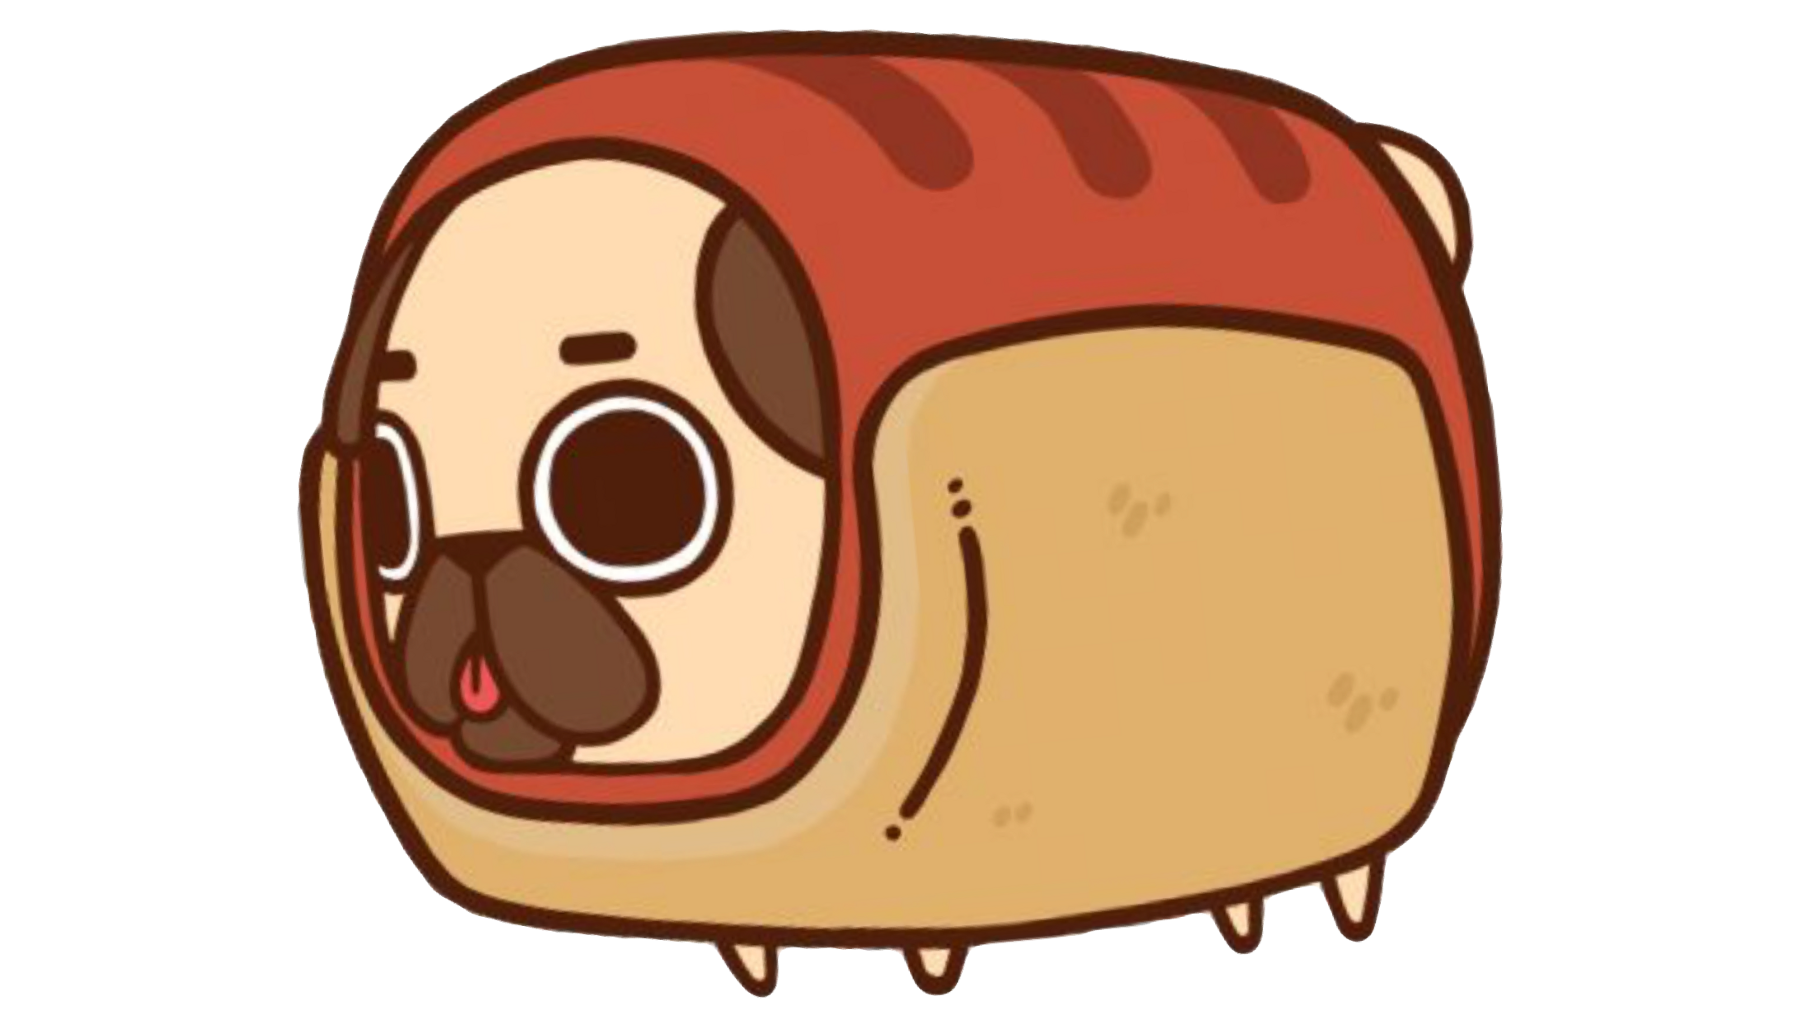 Kawaii dog pug animal. Hotdog clipart cute